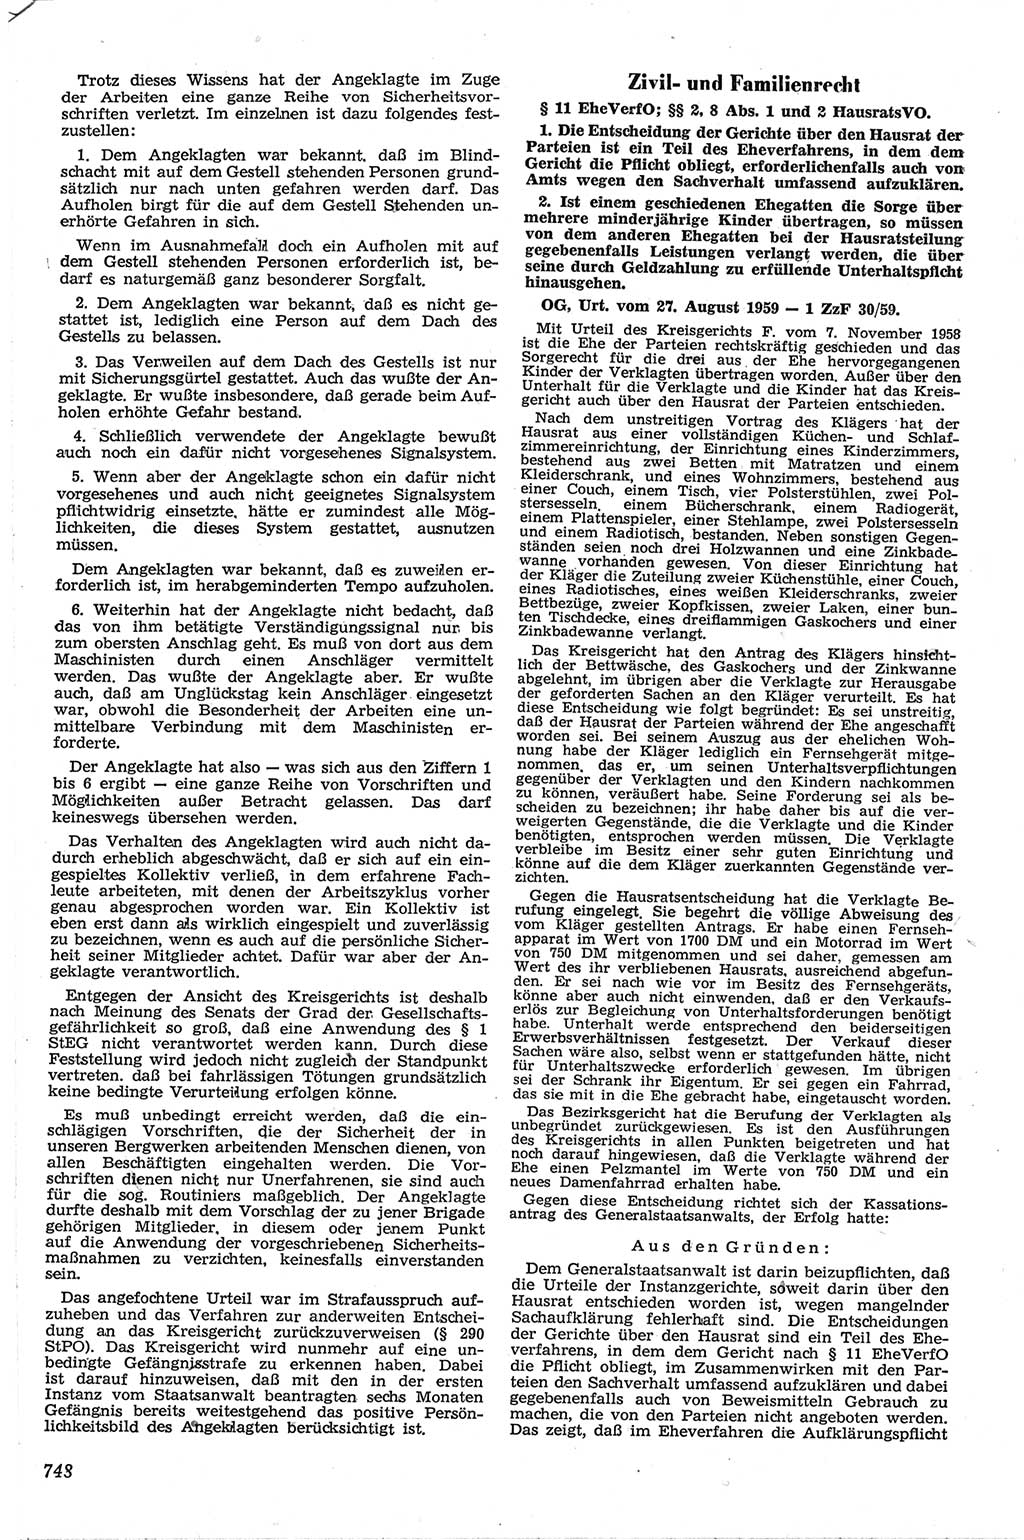 Neue Justiz (NJ), Zeitschrift für Recht und Rechtswissenschaft [Deutsche Demokratische Republik (DDR)], 13. Jahrgang 1959, Seite 748 (NJ DDR 1959, S. 748)